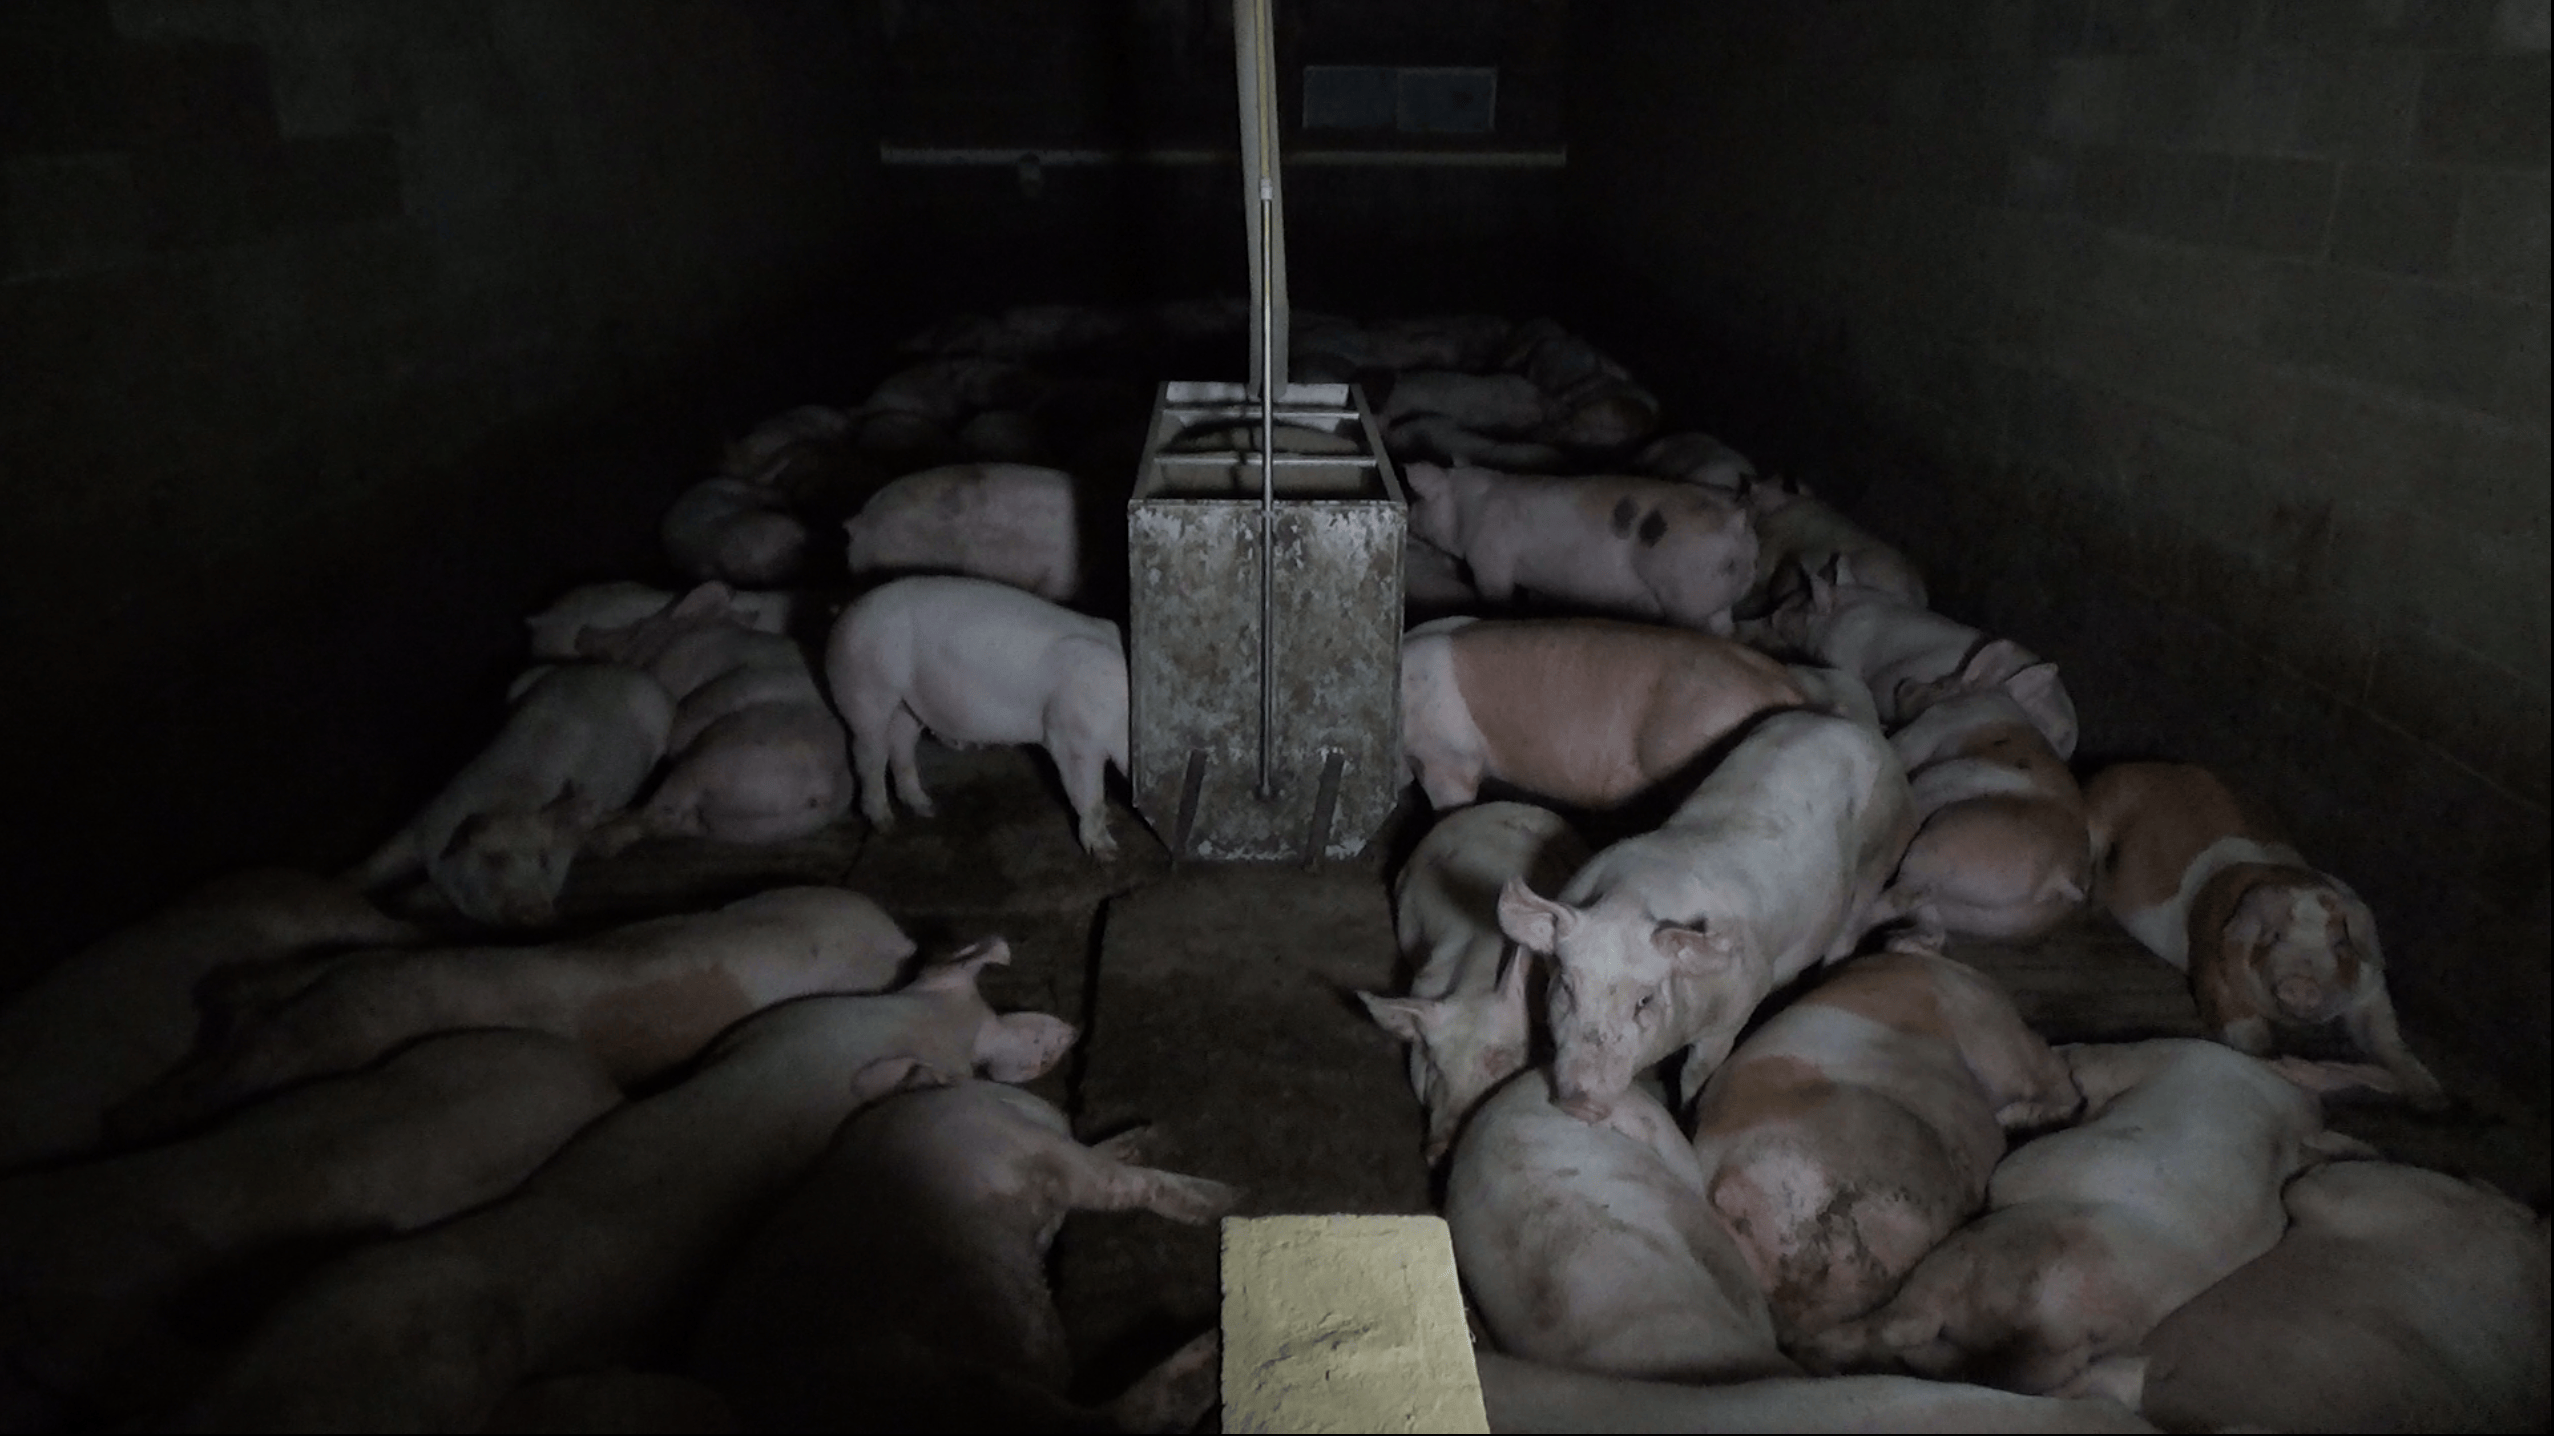 Piglets in darkness at Excelsior Hog Farm.